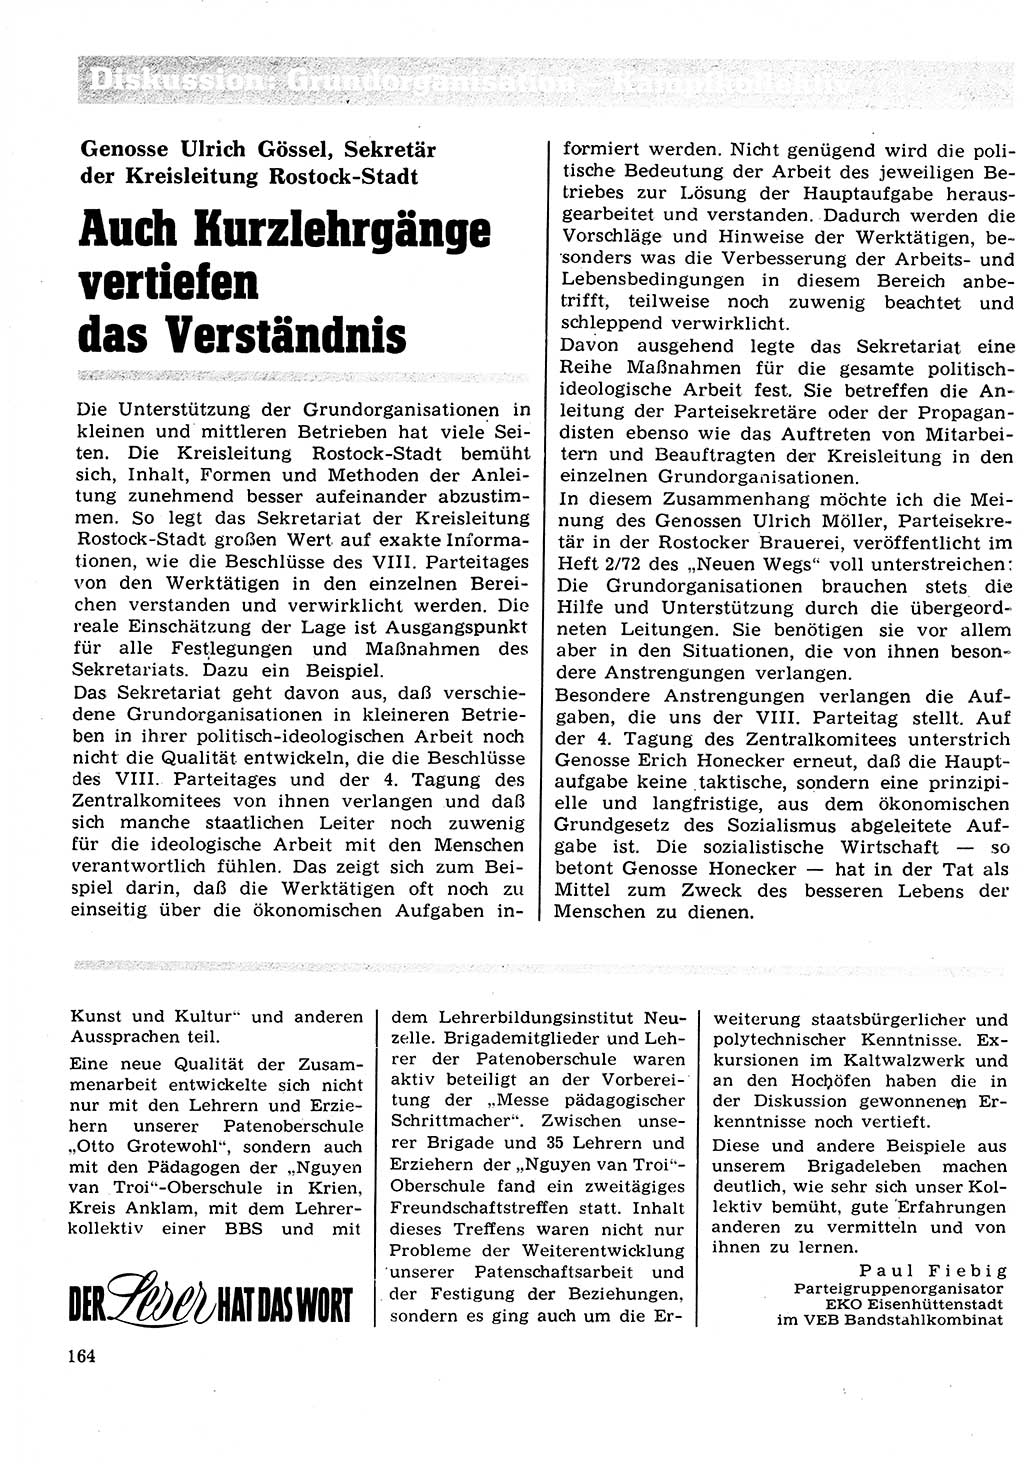 Neuer Weg (NW), Organ des Zentralkomitees (ZK) der SED (Sozialistische Einheitspartei Deutschlands) für Fragen des Parteilebens, 27. Jahrgang [Deutsche Demokratische Republik (DDR)] 1972, Seite 164 (NW ZK SED DDR 1972, S. 164)